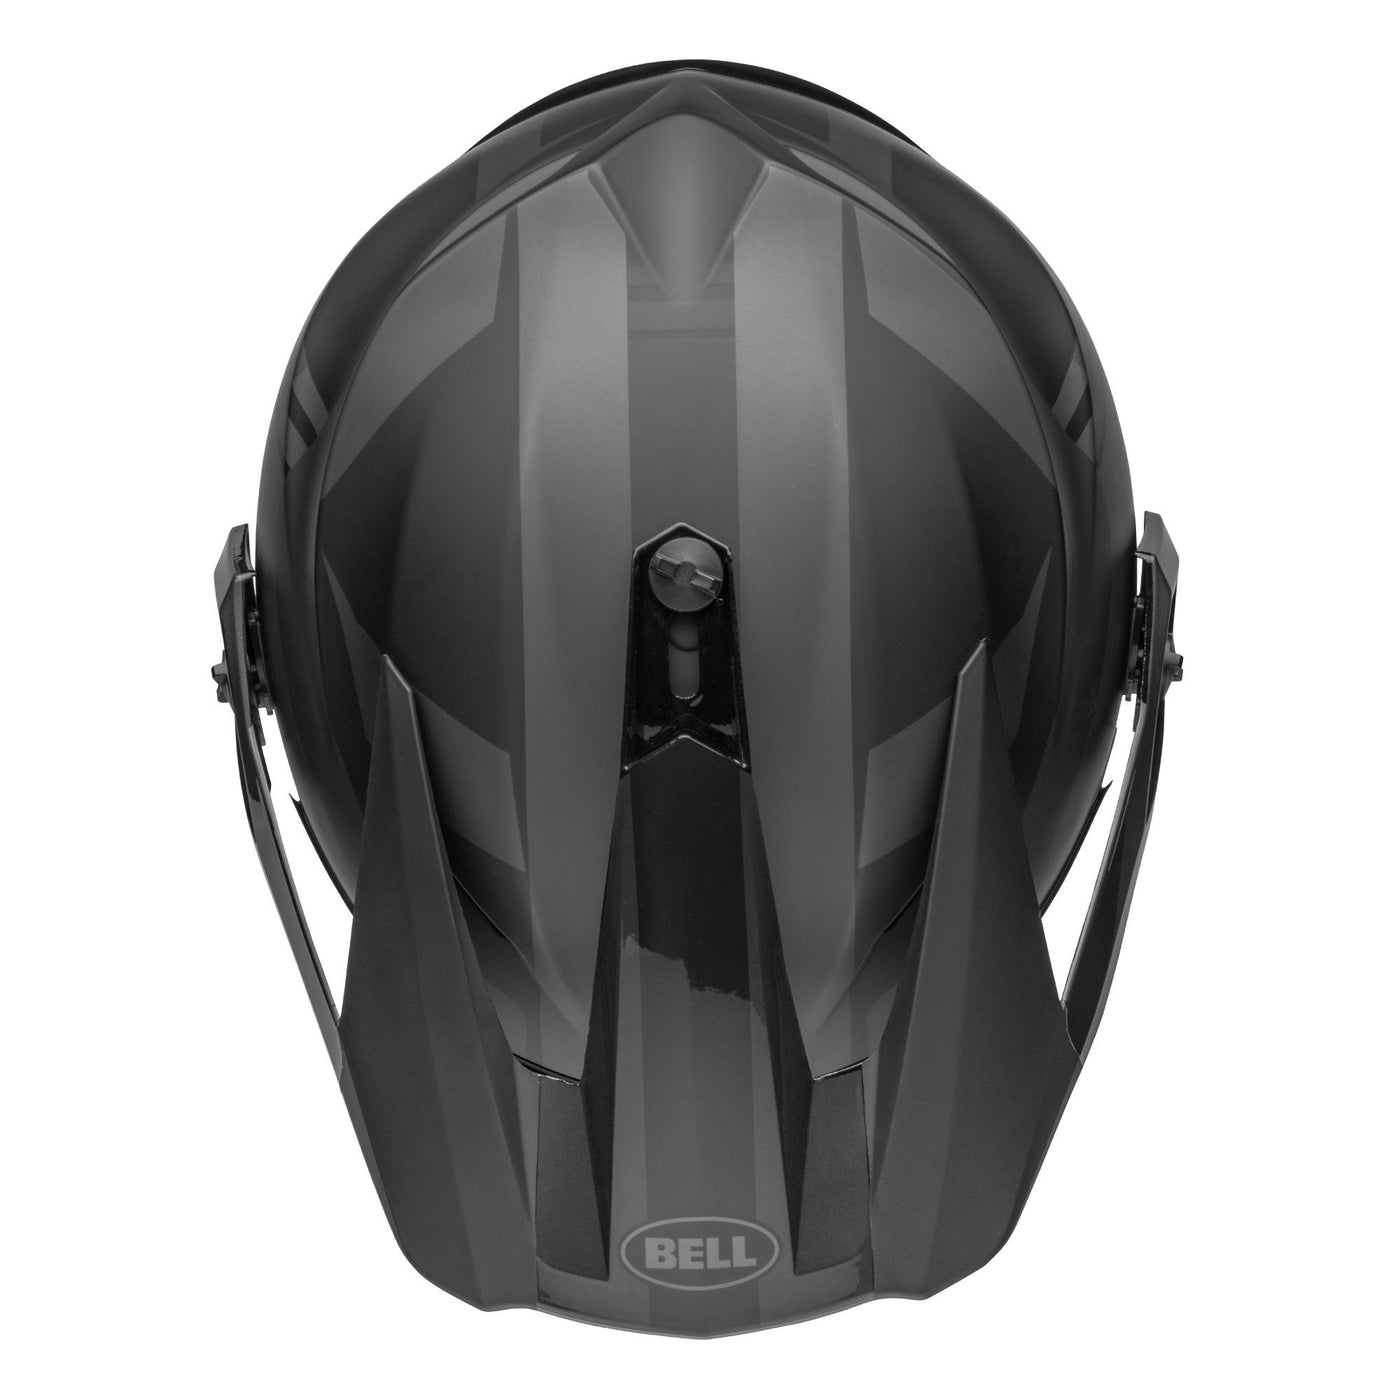 bell mx 9 adventure mips dirt motorcycle helmet marauder matte gloss blackout top